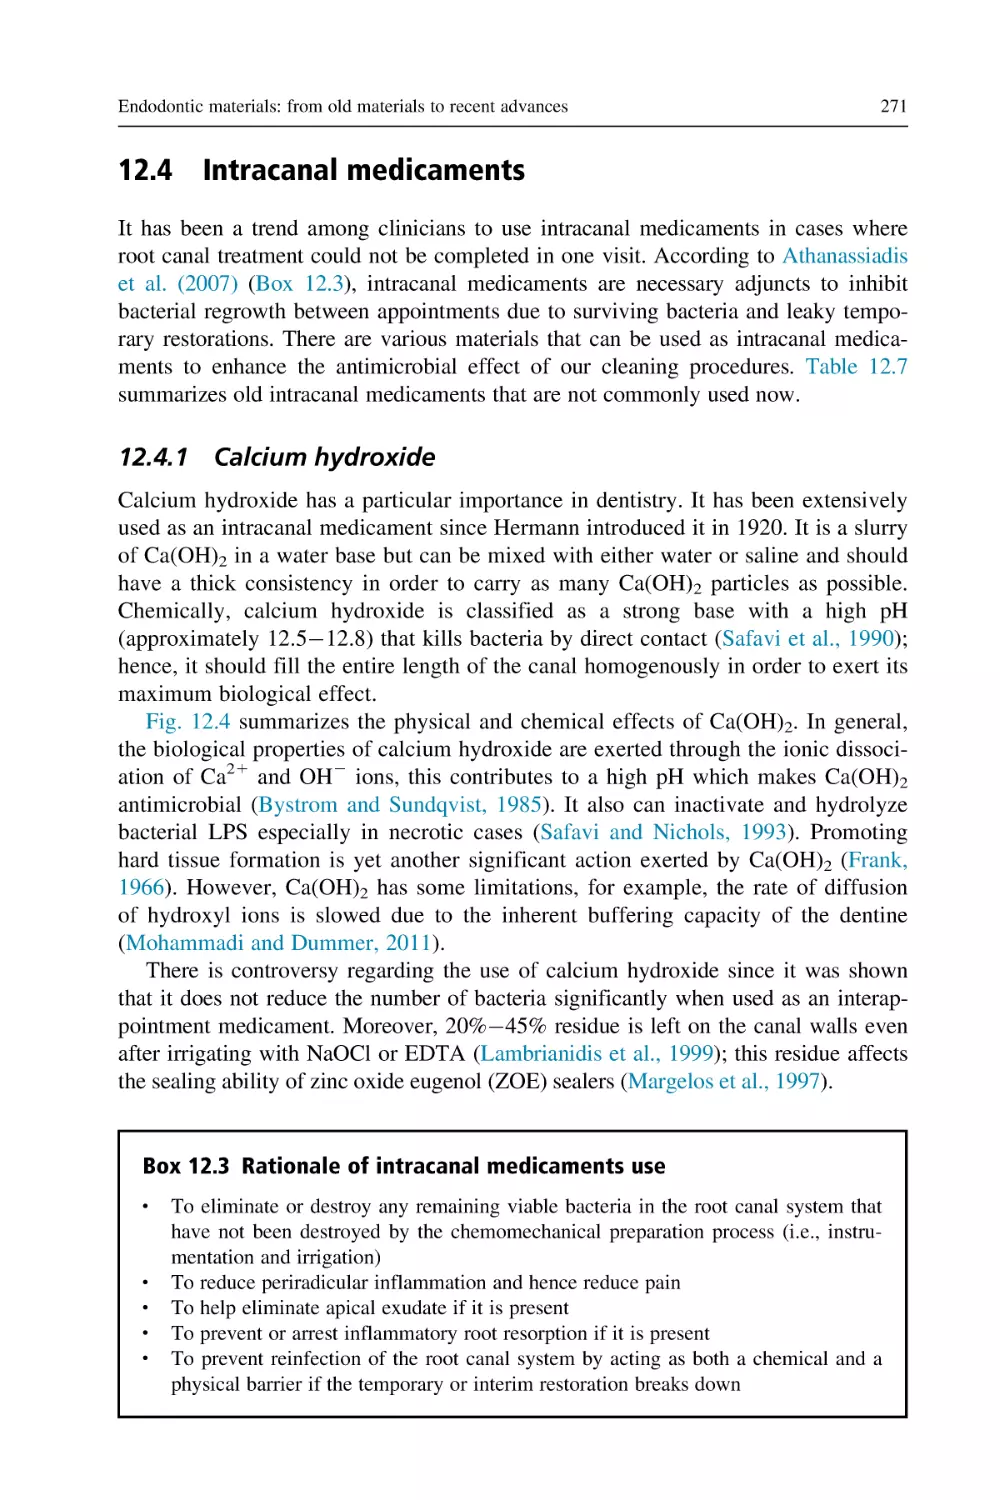 12.4 Intracanal medicaments
12.4.1 Calcium hydroxide